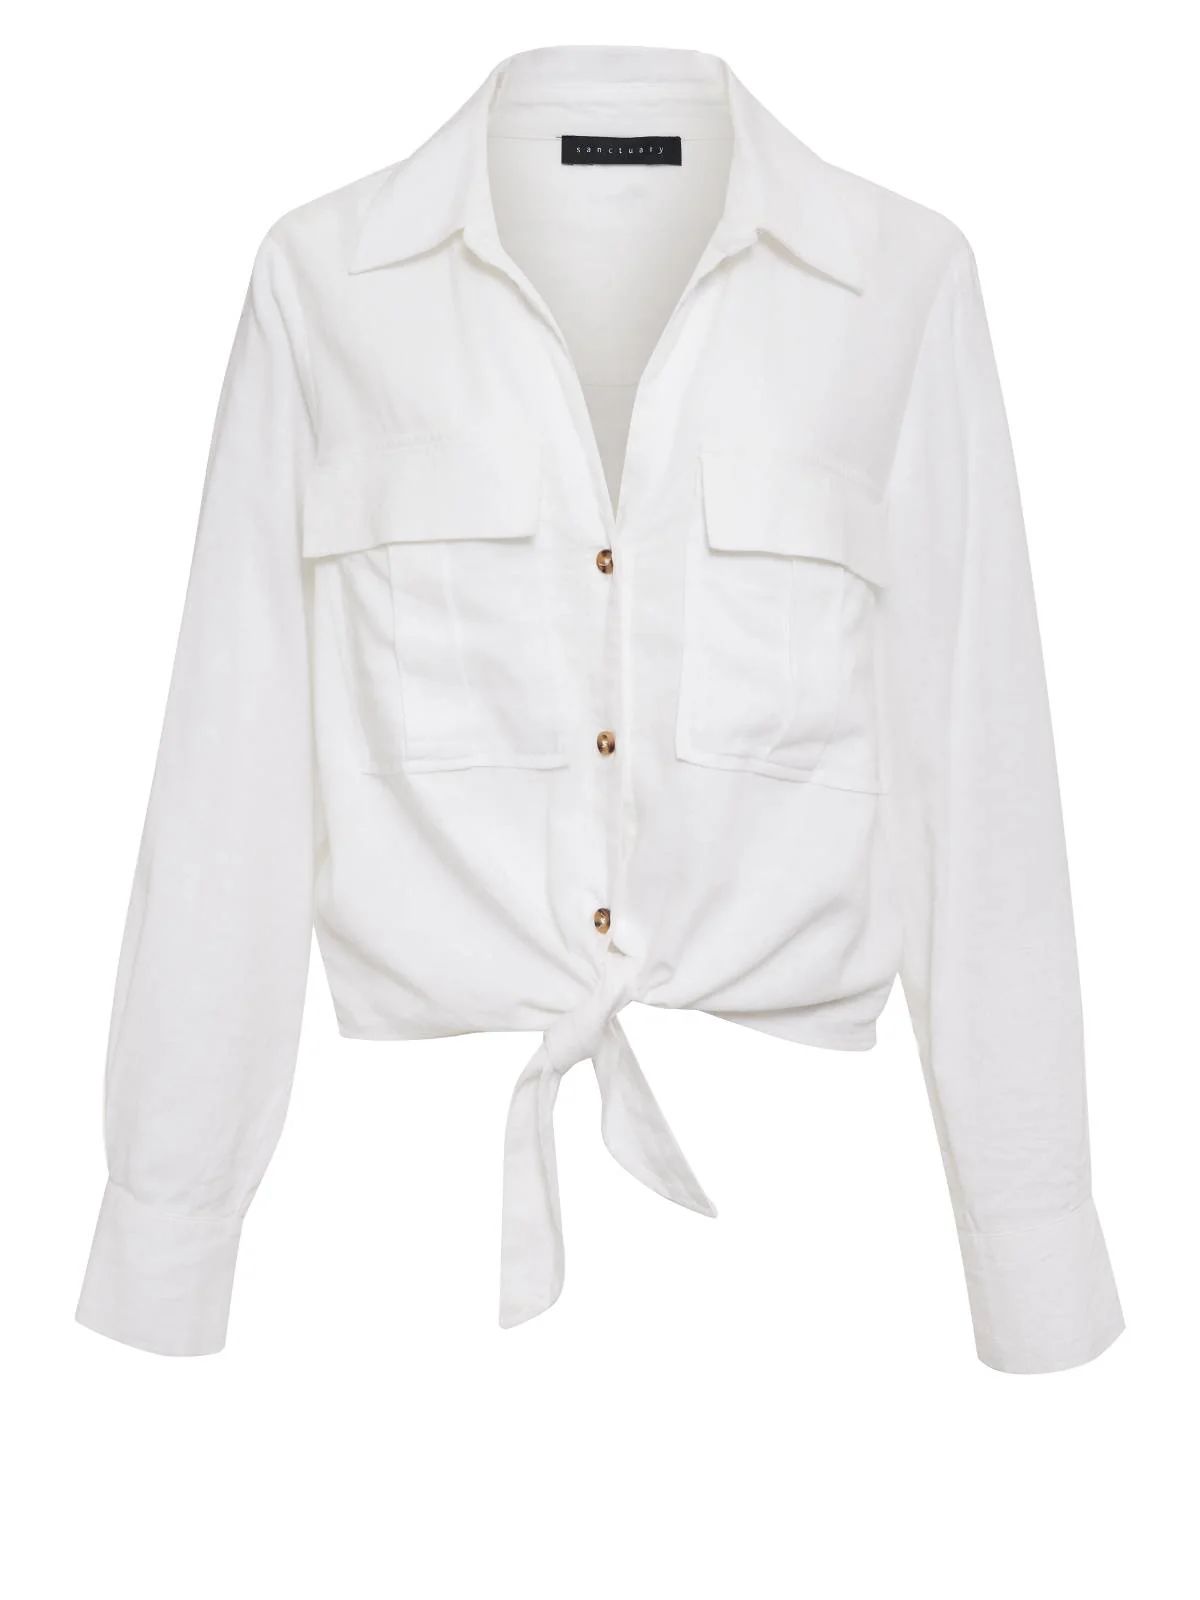 Utility Pocket Shirt White | Sanctuary Clothing